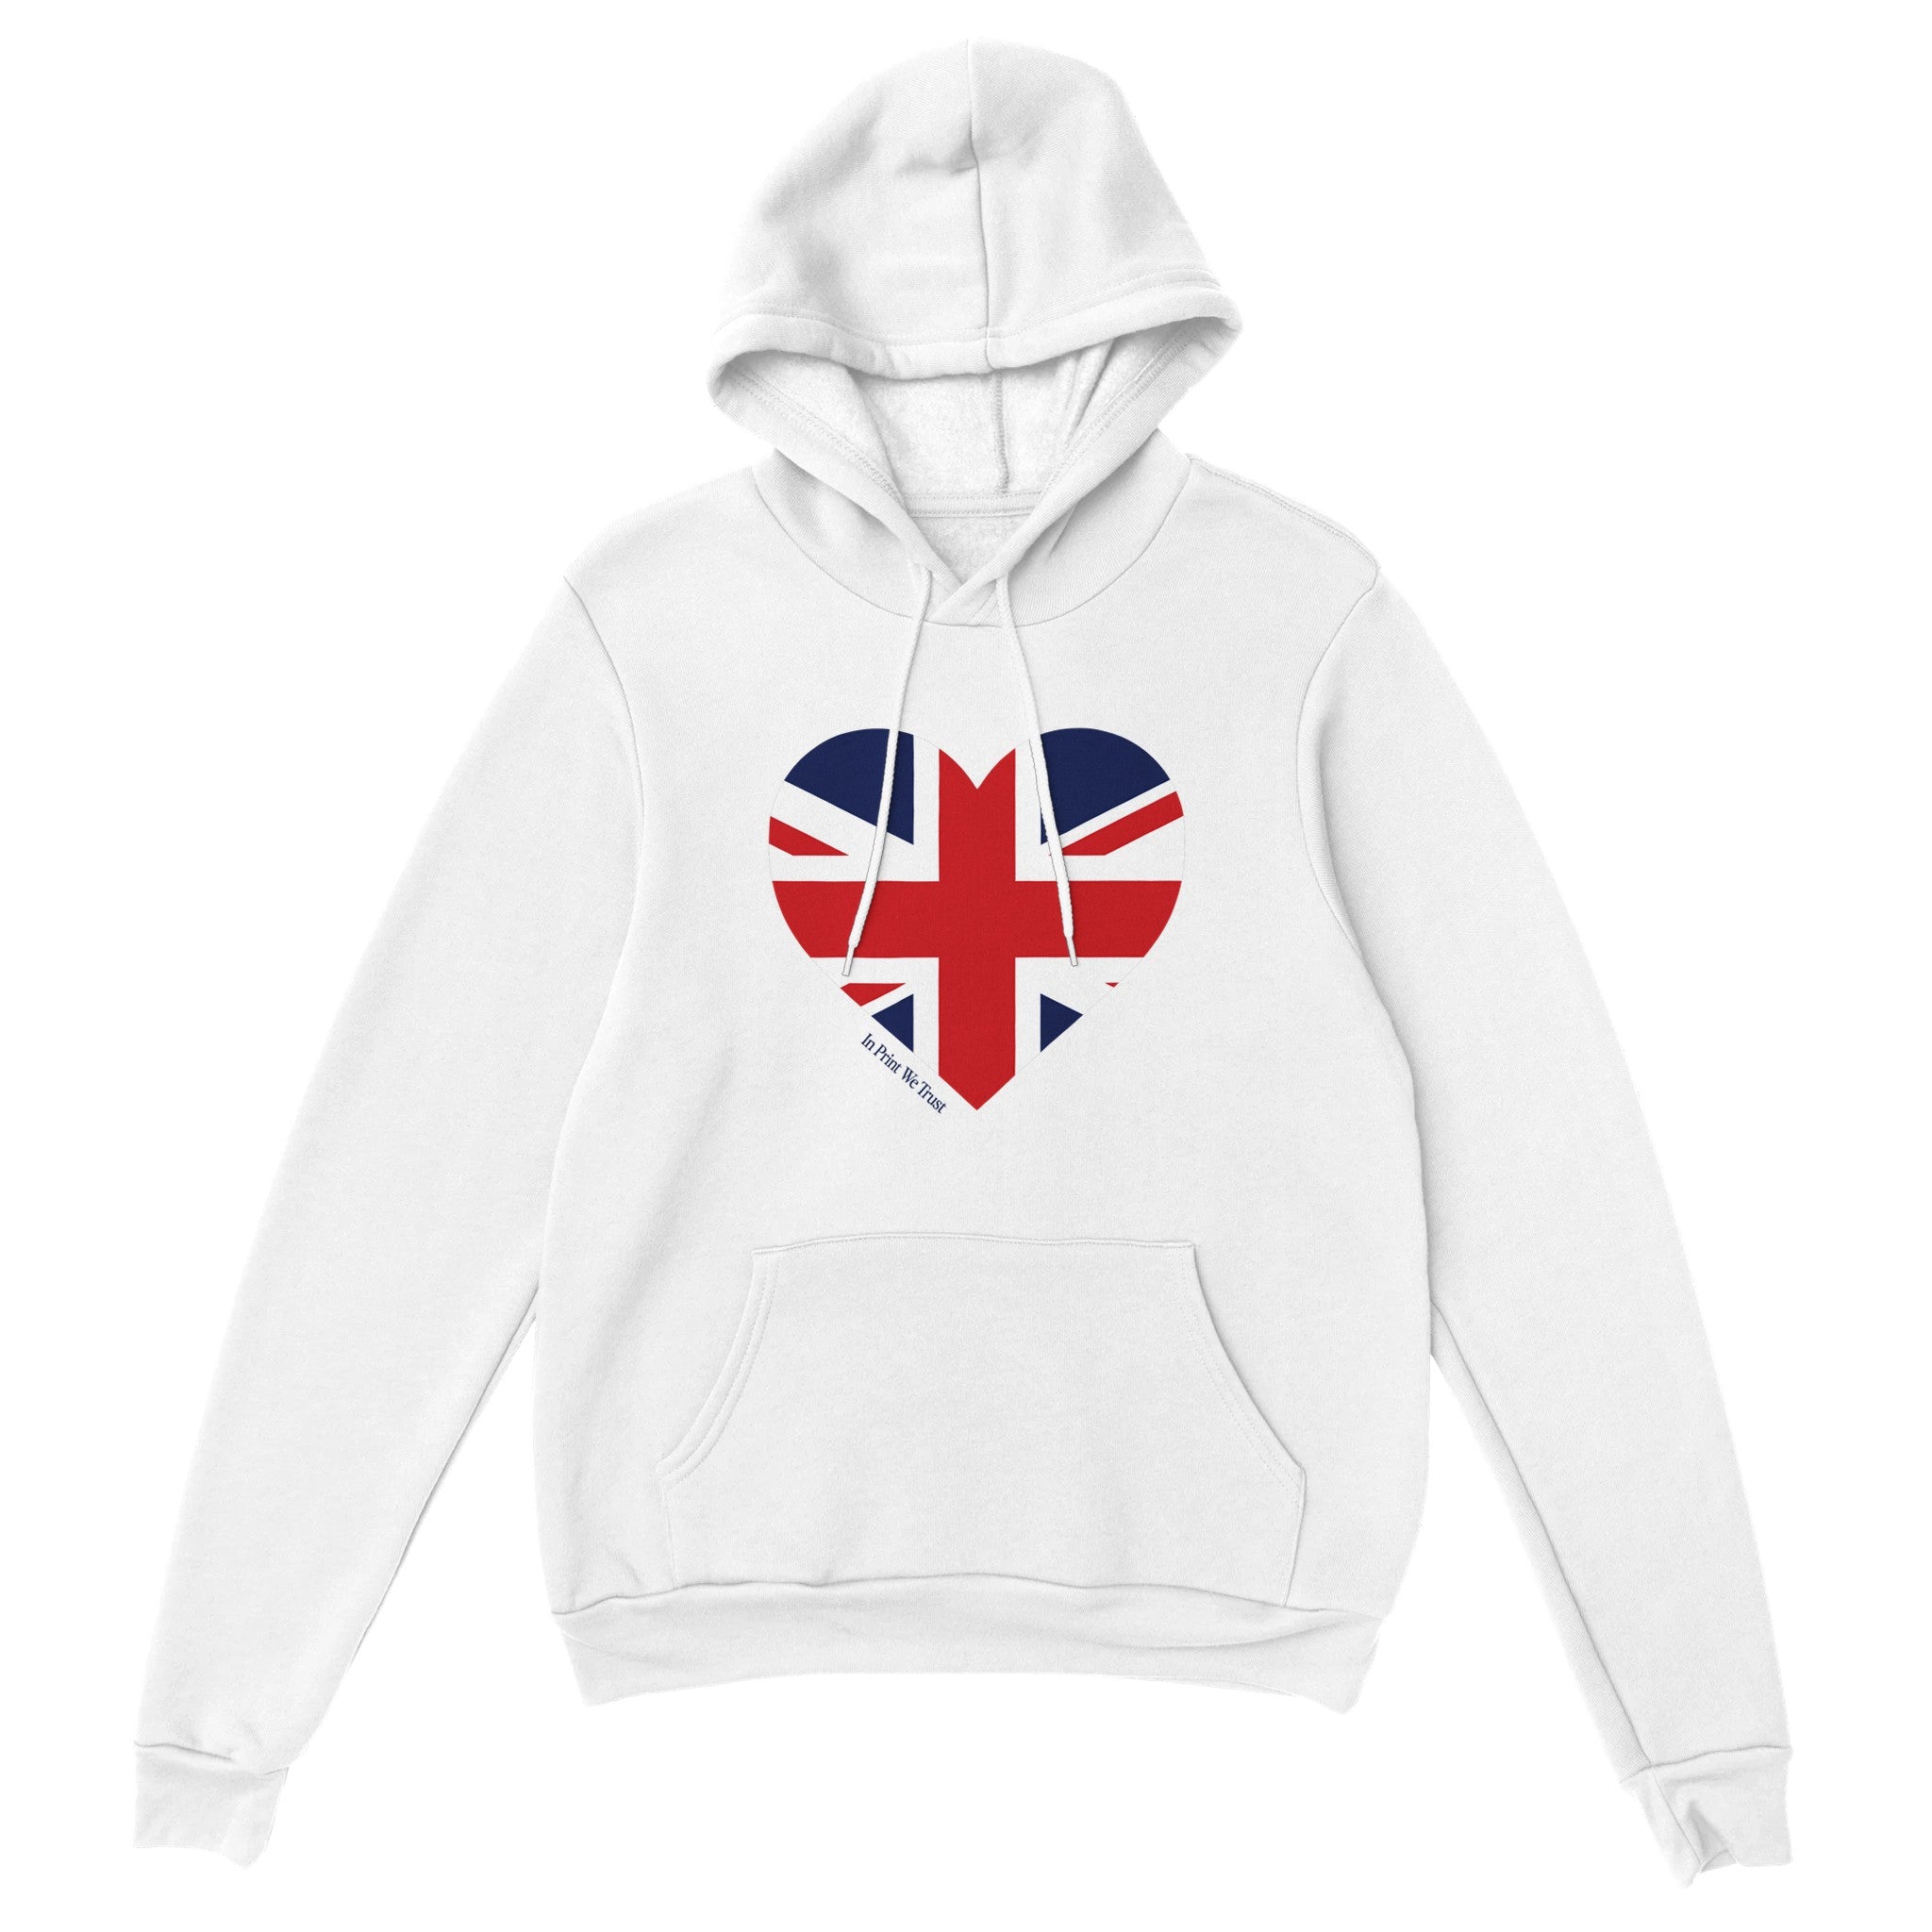 'Great Britain' hoodie - In Print We Trust